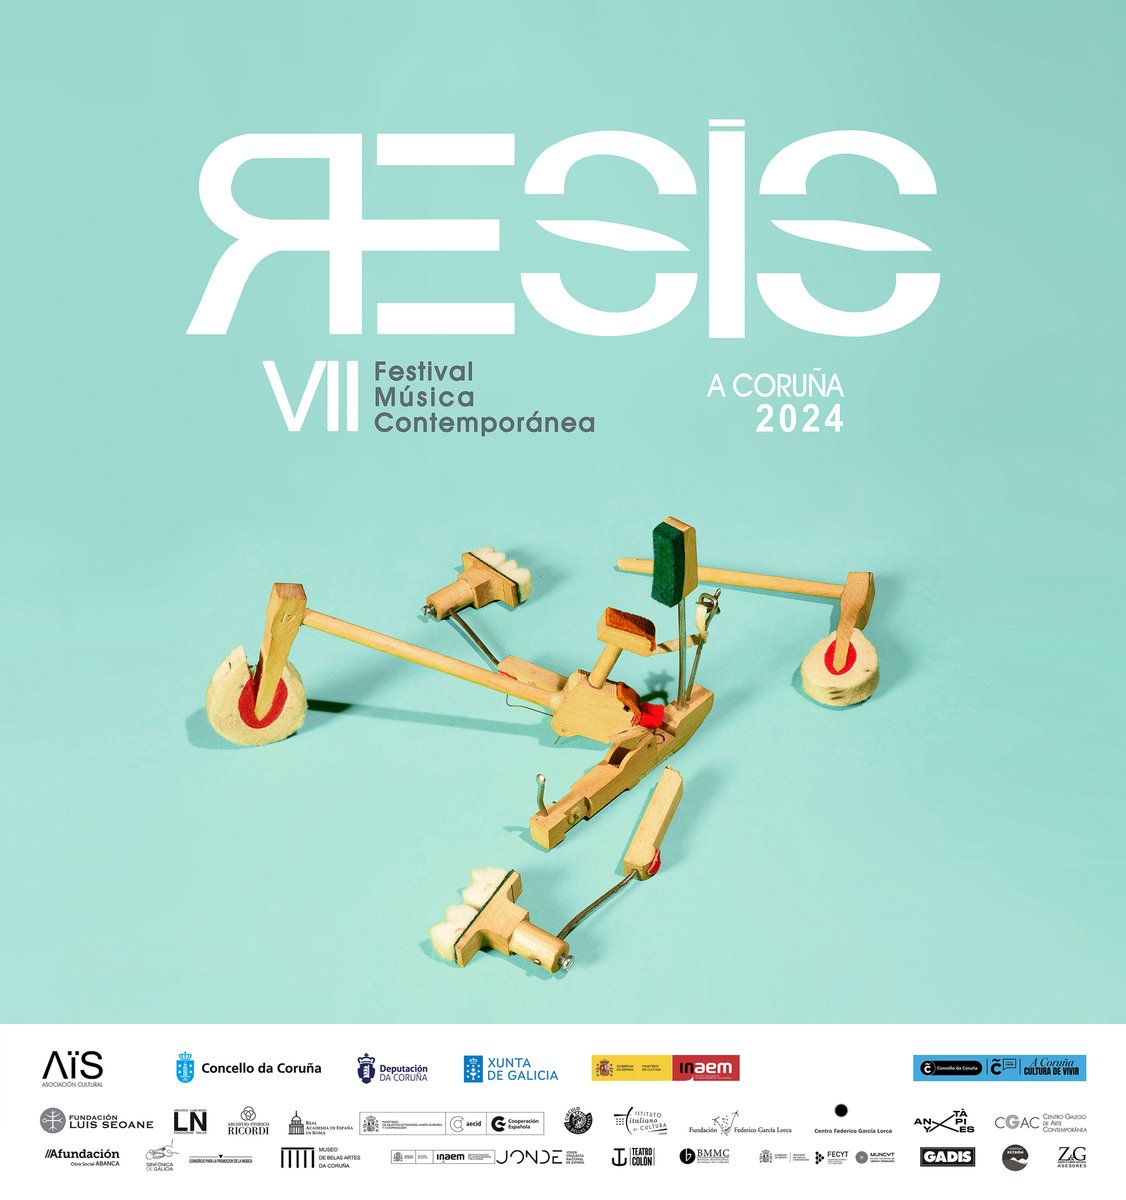 CHEGA #RESIS! A VII edición do festival homenaxea ao compositor italiano #LuigiNono polo seu centenario. Moitas grazas ás entidades colaboradoras por facer #RESIS24 posible! 3 maio – 9 xuño